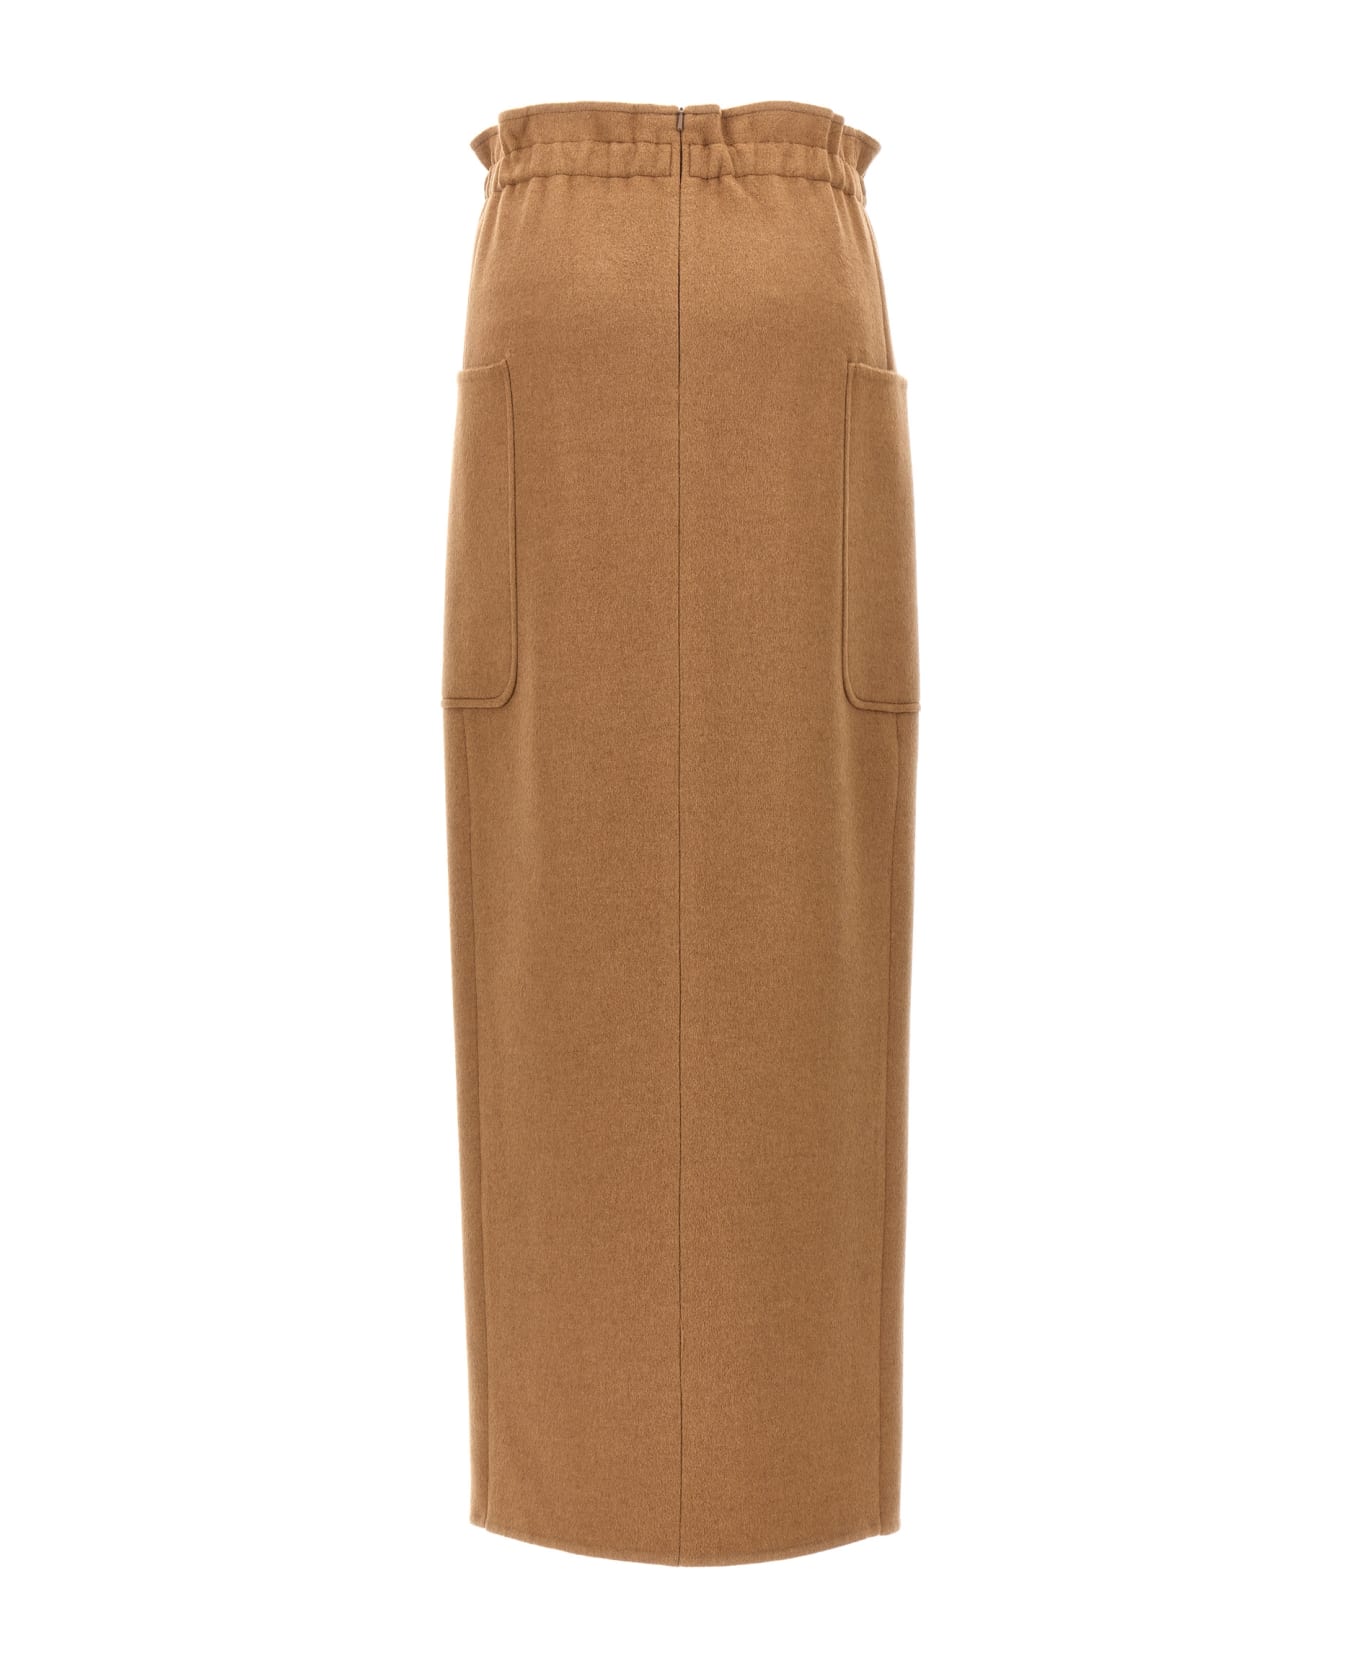 Max Mara 'carbone' Long Skirt - Brown スカート